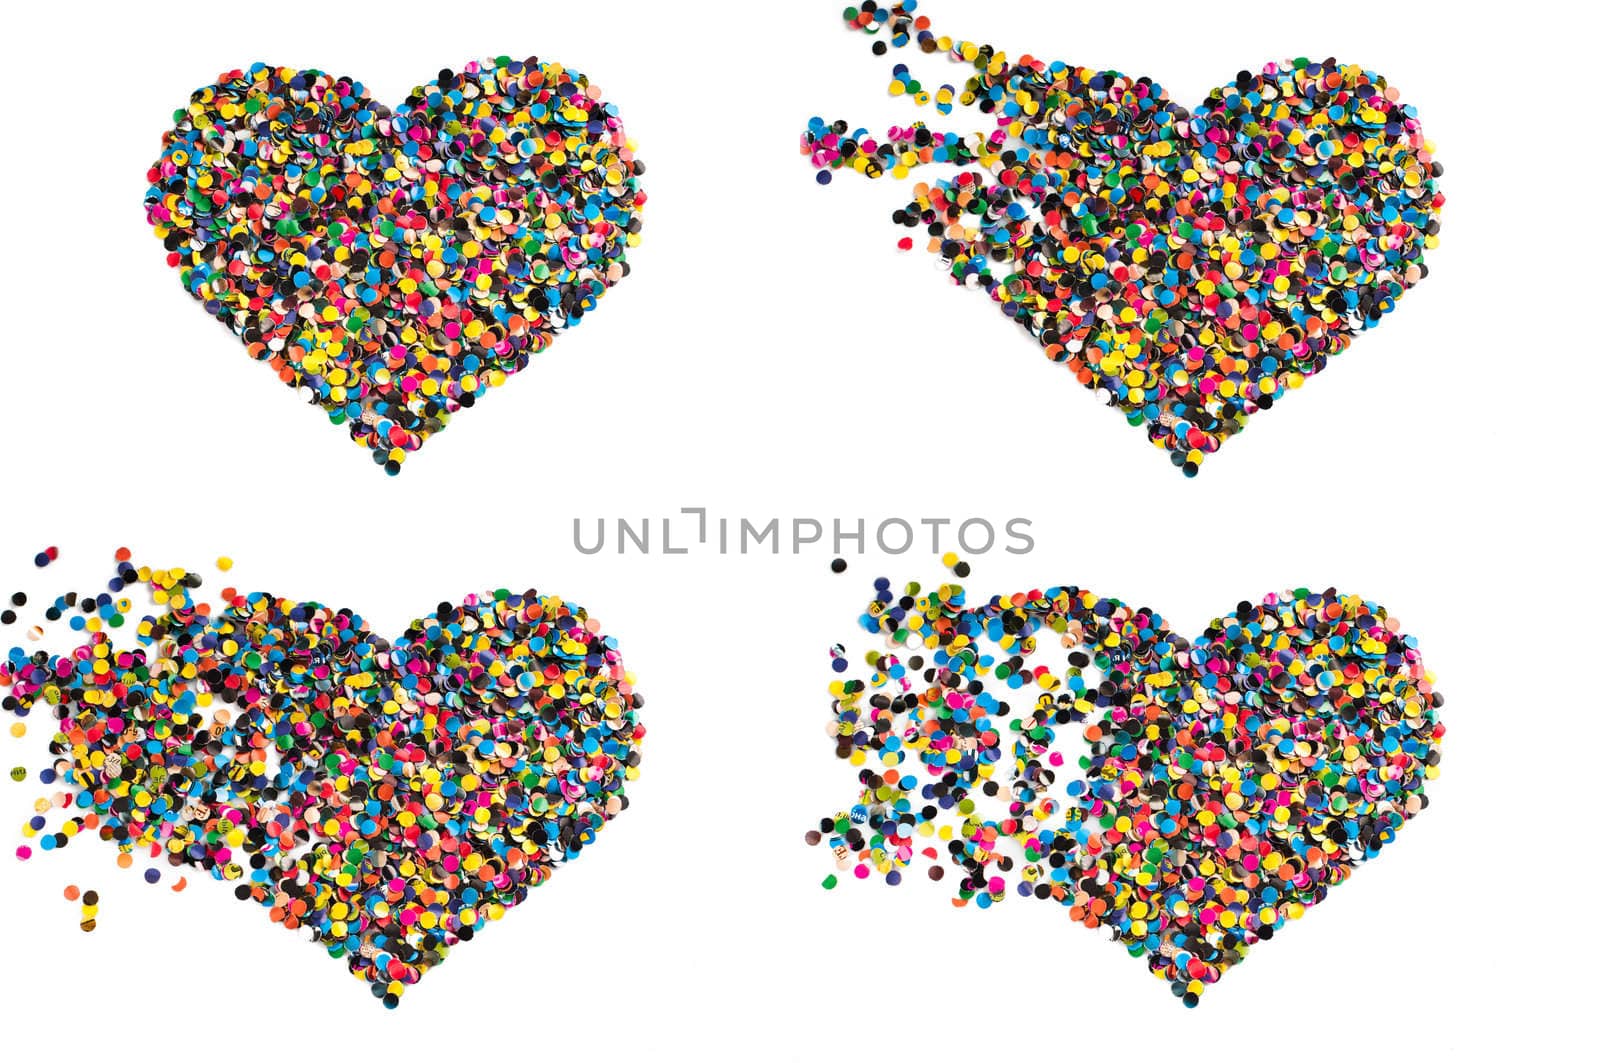 Confetti heart by nvelichko